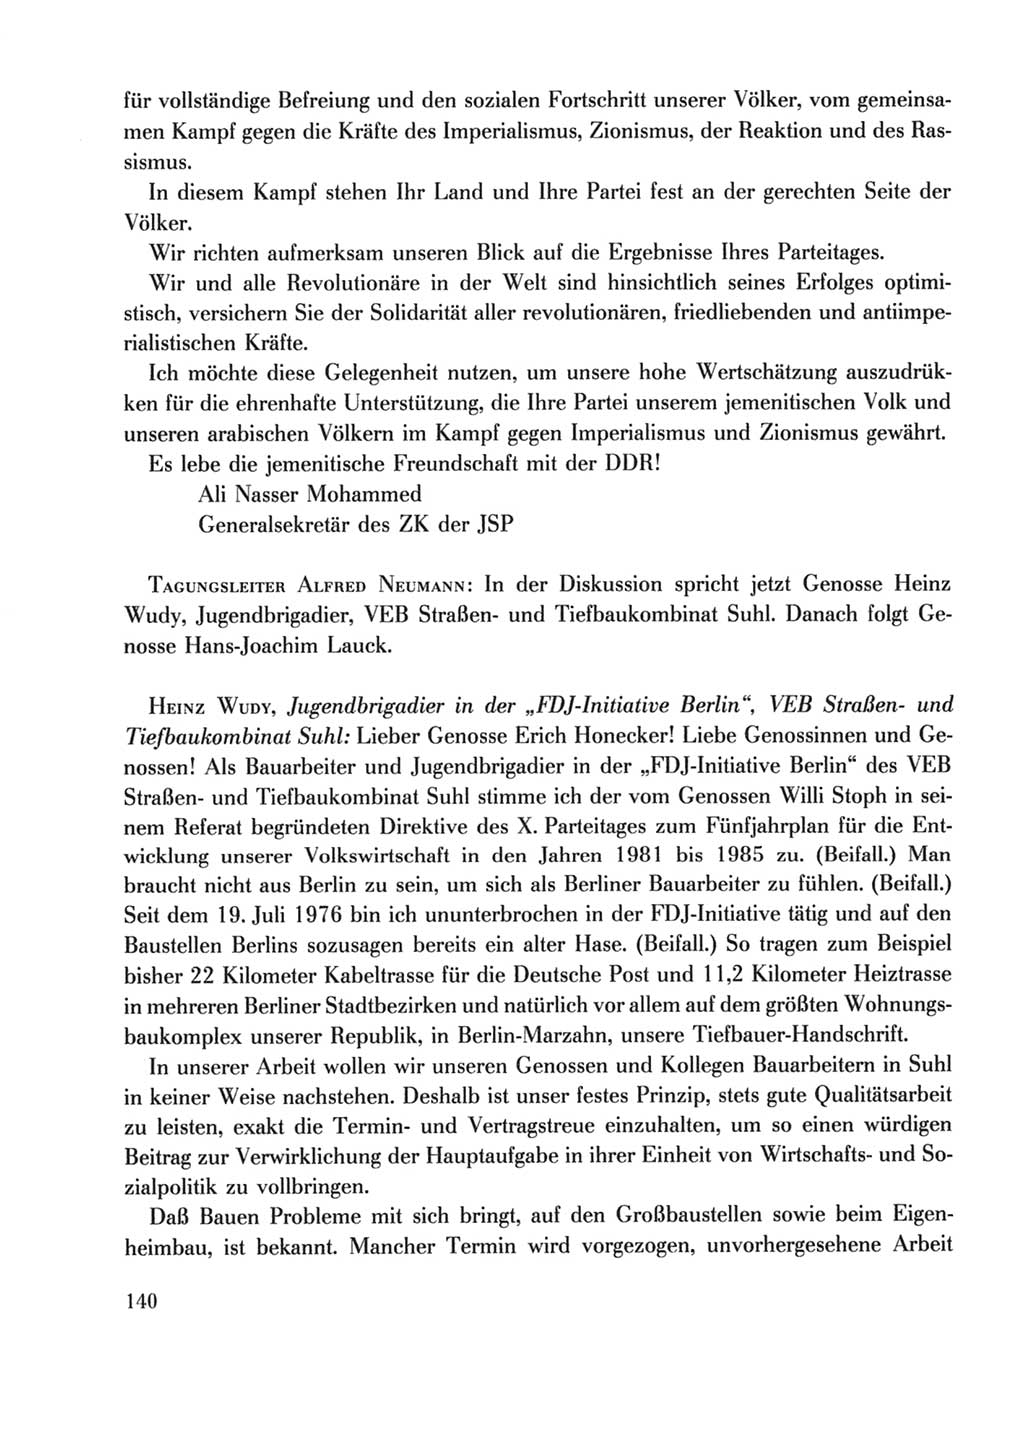 Protokoll der Verhandlungen des Ⅹ. Parteitages der Sozialistischen Einheitspartei Deutschlands (SED) [Deutsche Demokratische Republik (DDR)] 1981, Band 2, Seite 140 (Prot. Verh. Ⅹ. PT SED DDR 1981, Bd. 2, S. 140)